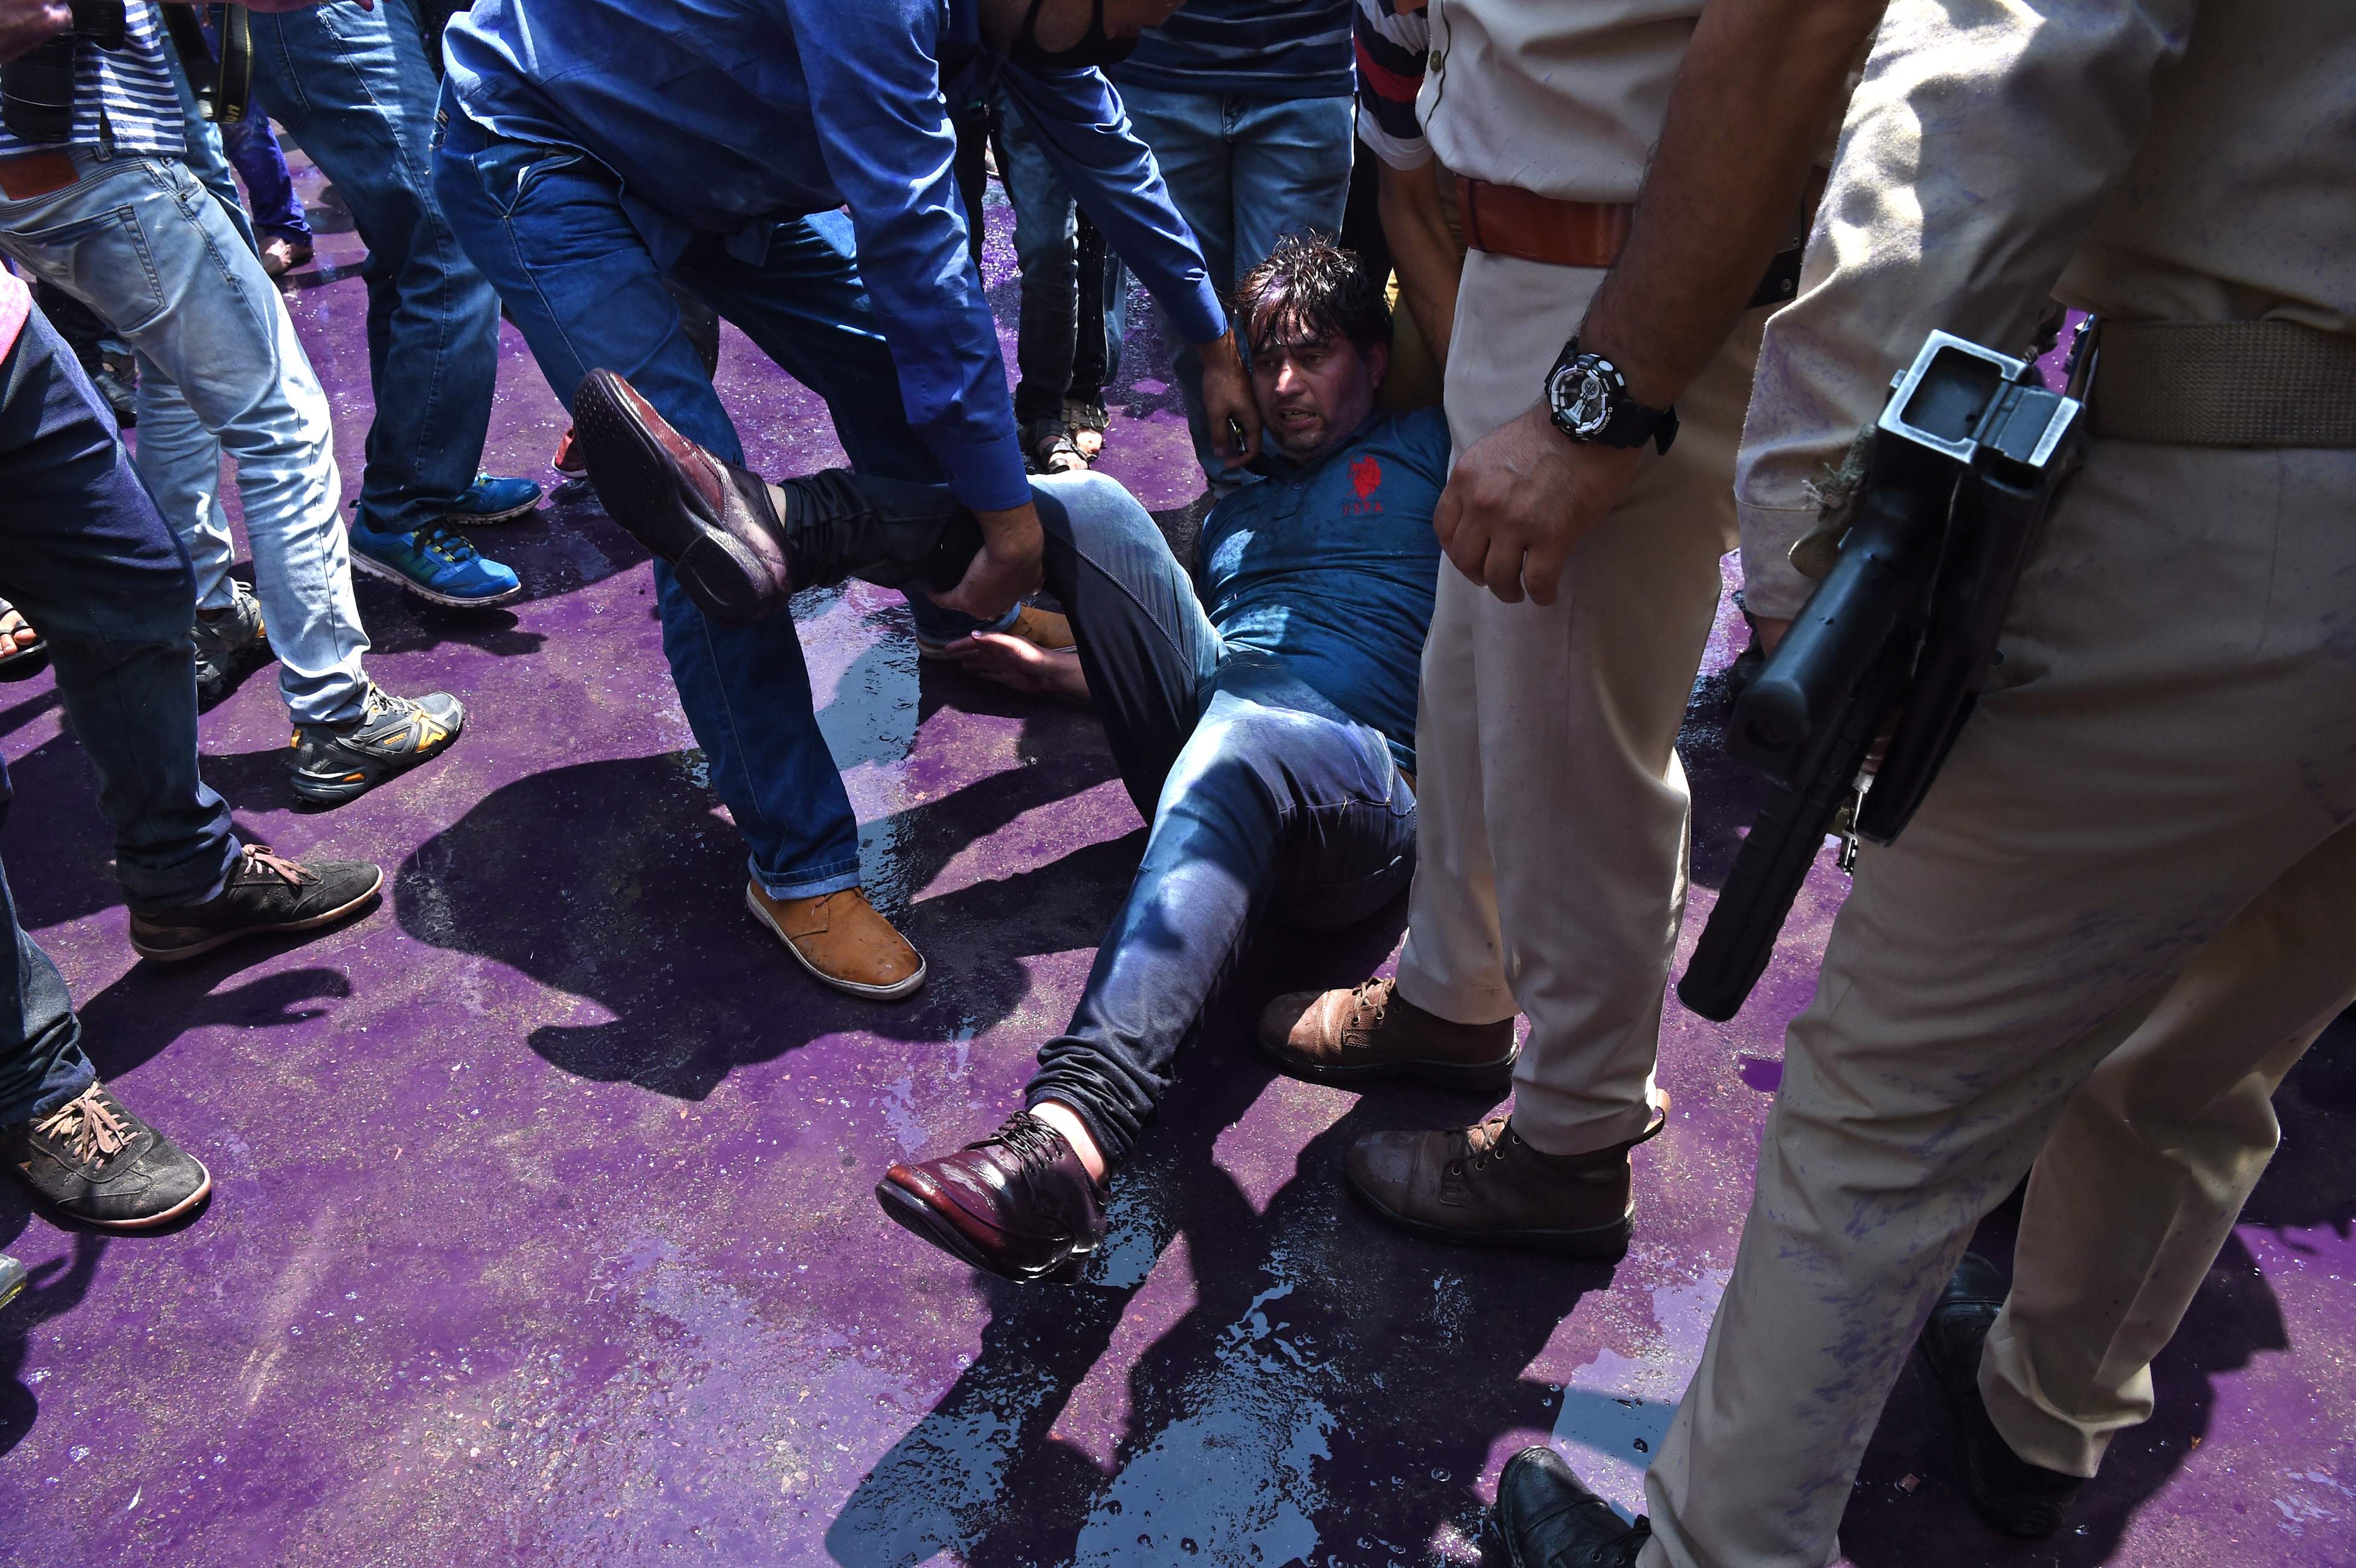 سقوط أحد المتظاهرين أثناء التظاهرة